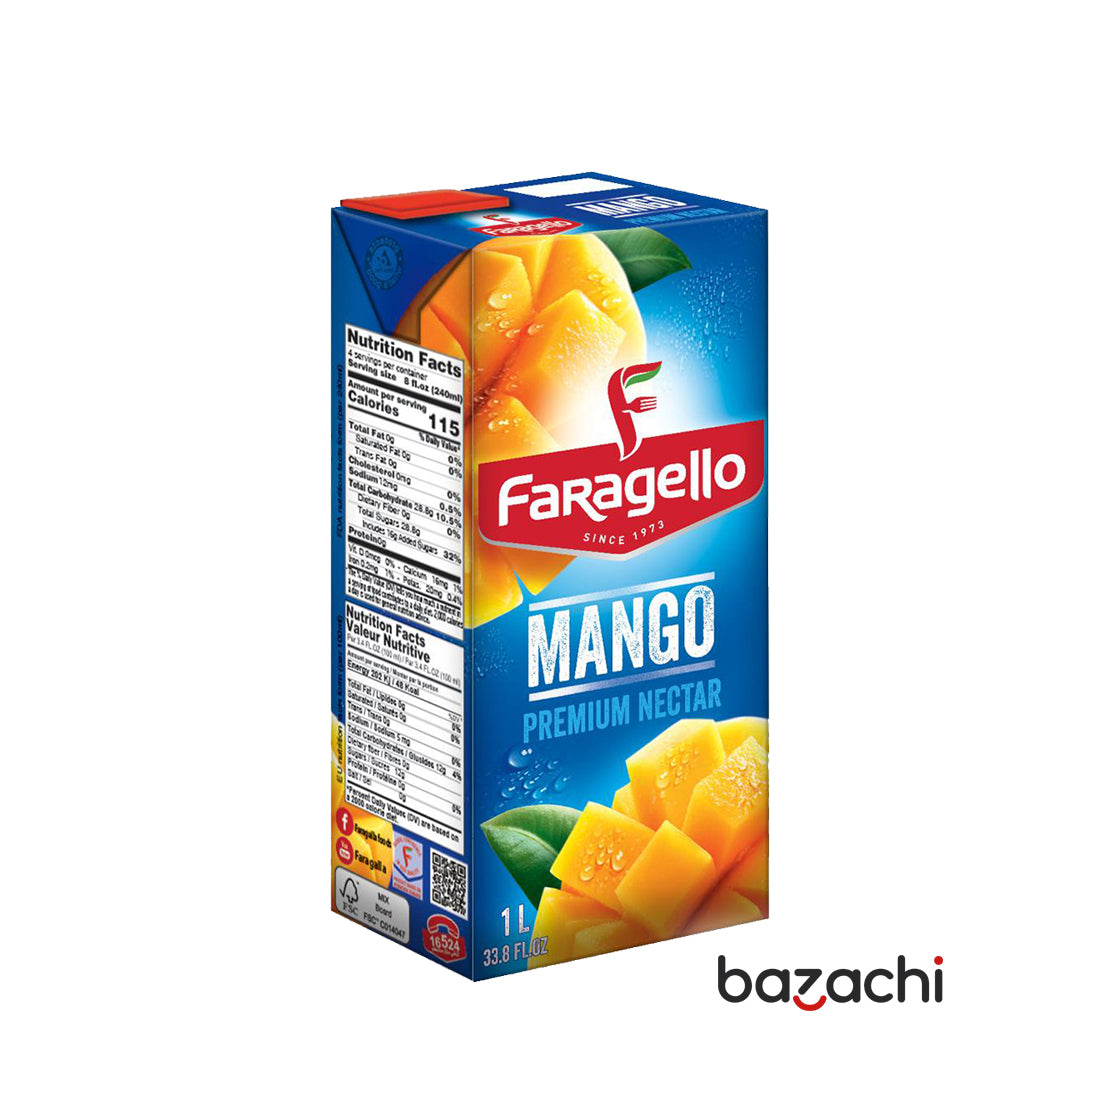 Faragello Mango Nectar Premium Juice(1L)